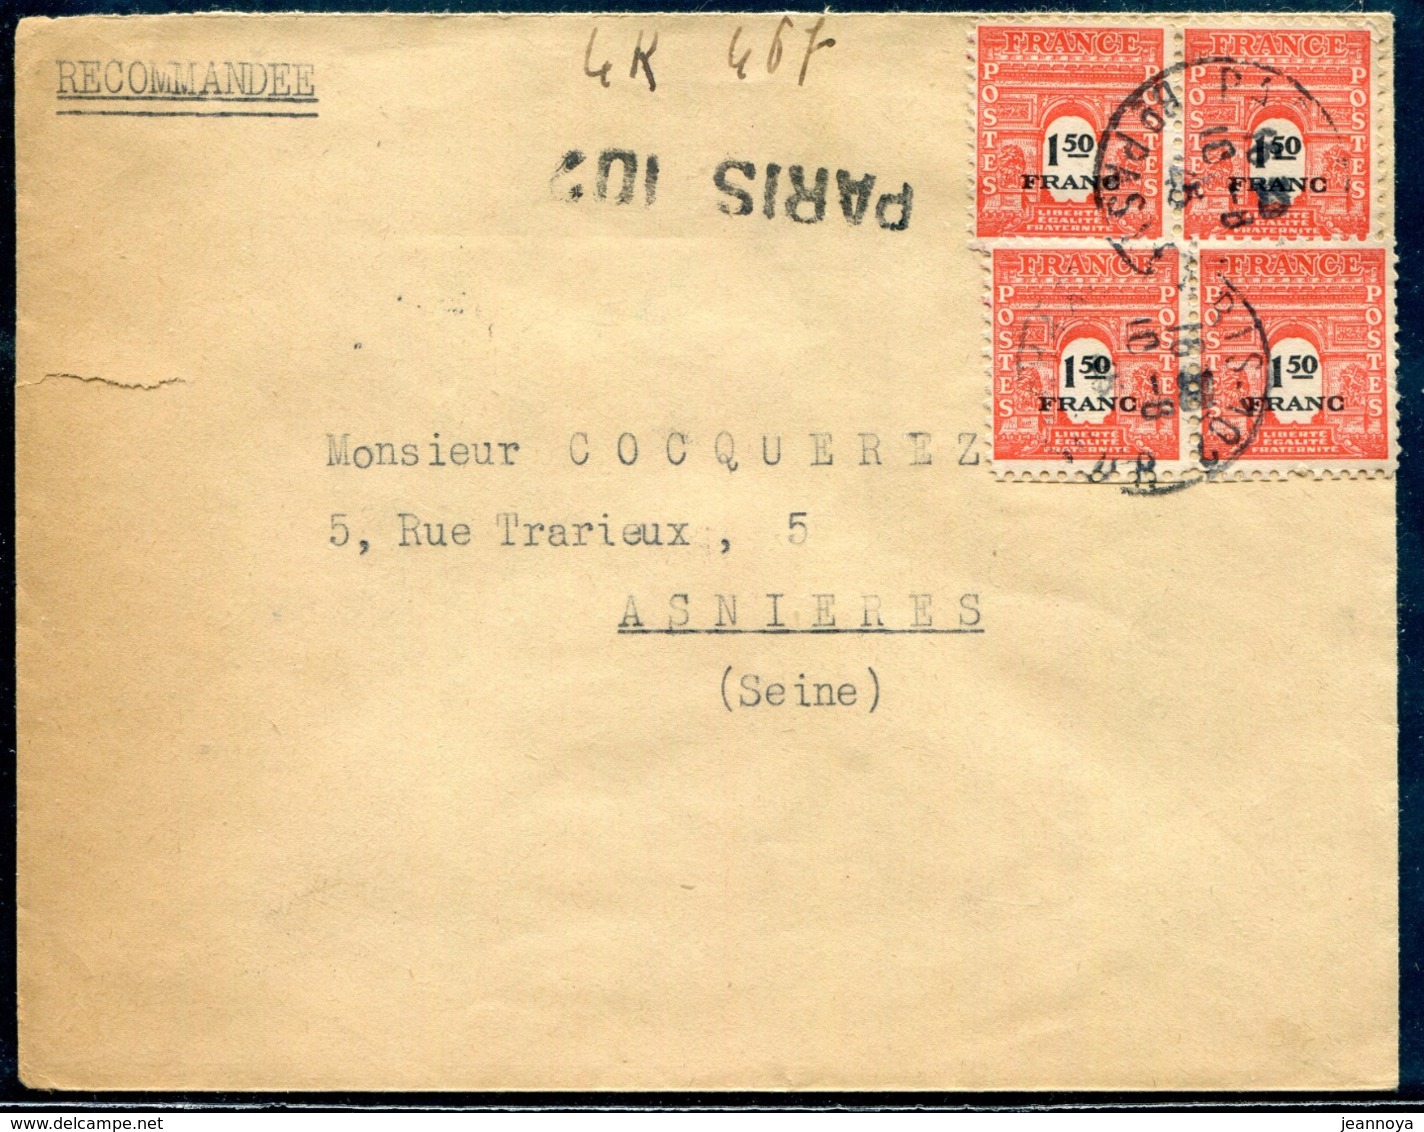 FRANCE - N° 708 (4) / LR DE PARIS 102 LE 10/8/1945 POUR LA SEINE - TB - 1944-45 Triomfboog